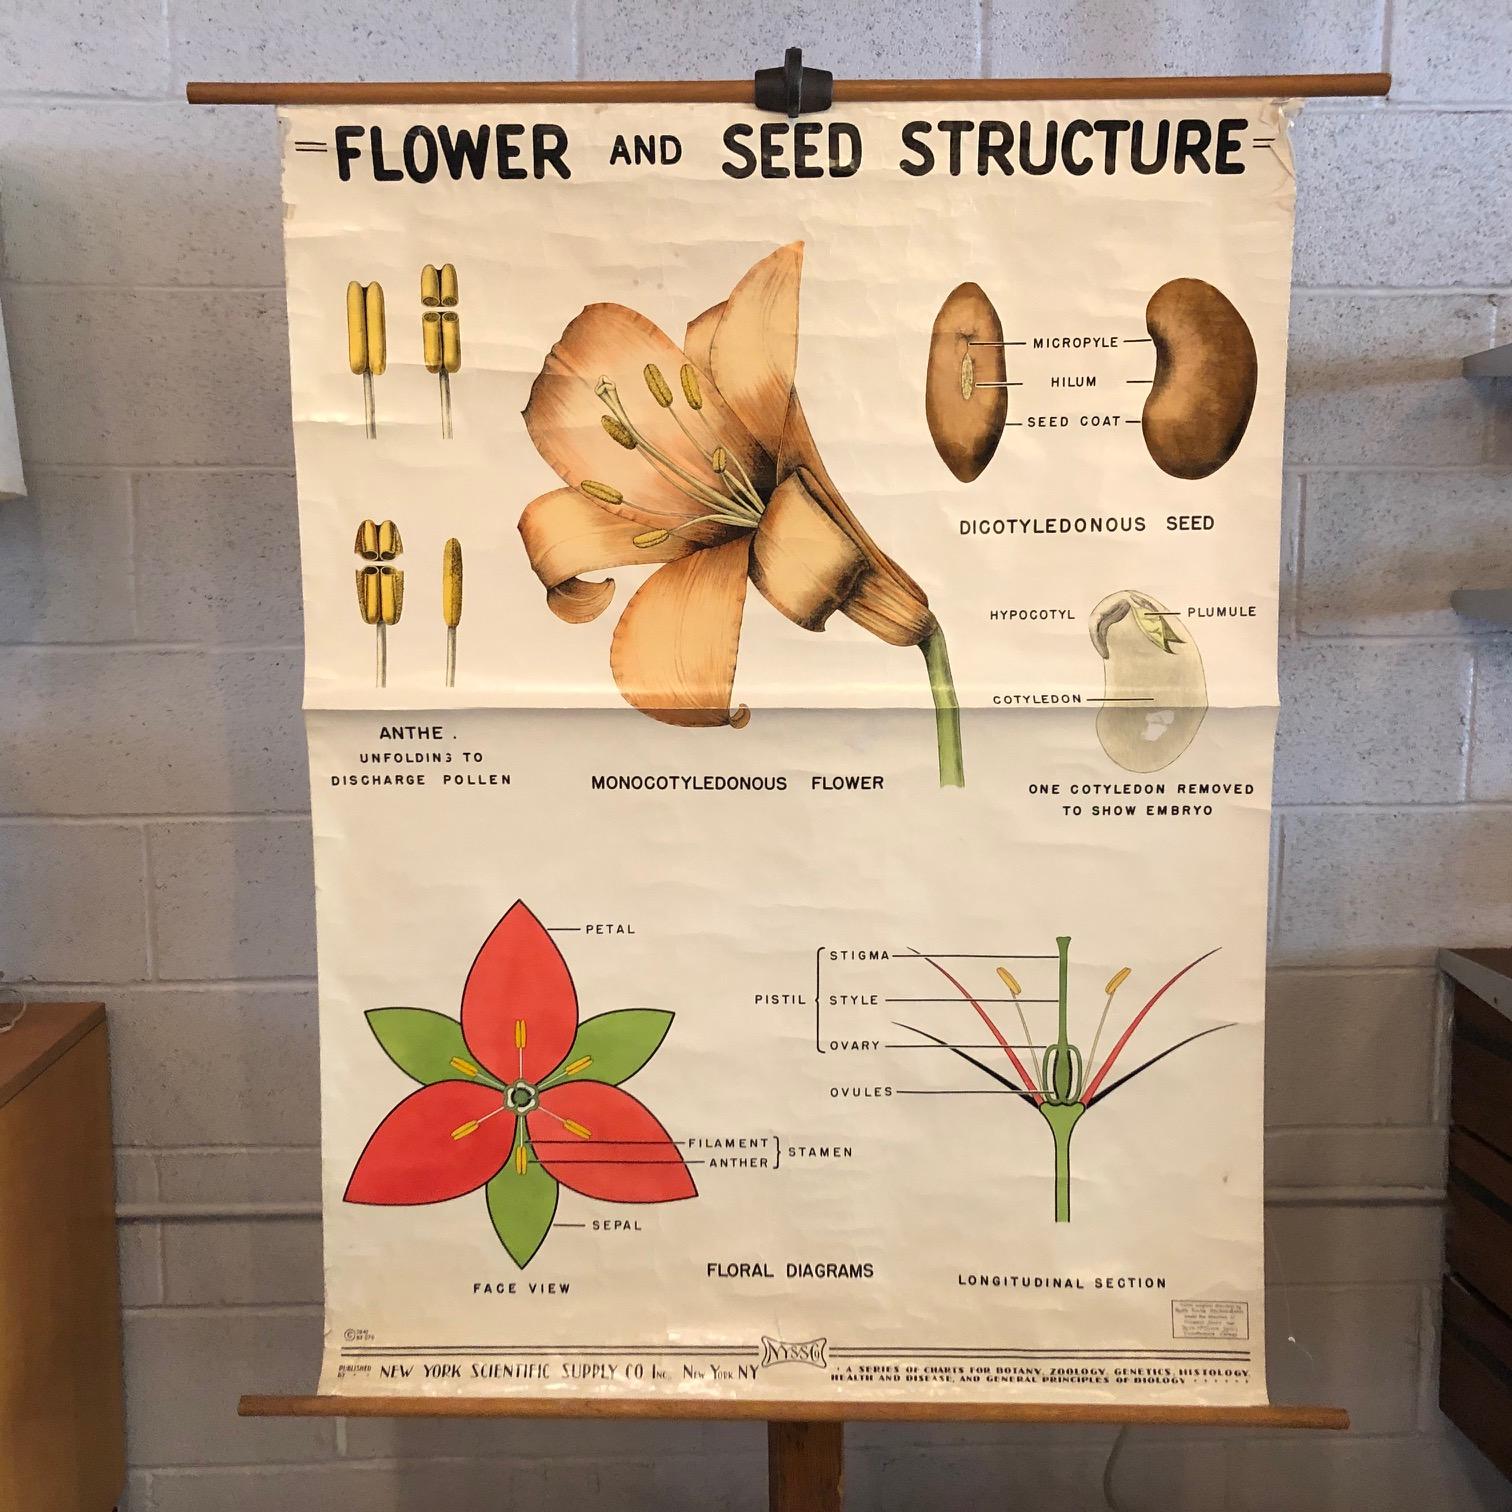 Lehrreiches, botanisches, biologisches, aufrollbares Schaubild von New York Scientific Supply Co. um 1941, das die Struktur von Blumen und Samen zeigt, gedruckt auf gestärktem Papier mit Leinwandunterlage auf einem Ahornstab mit Ring zum